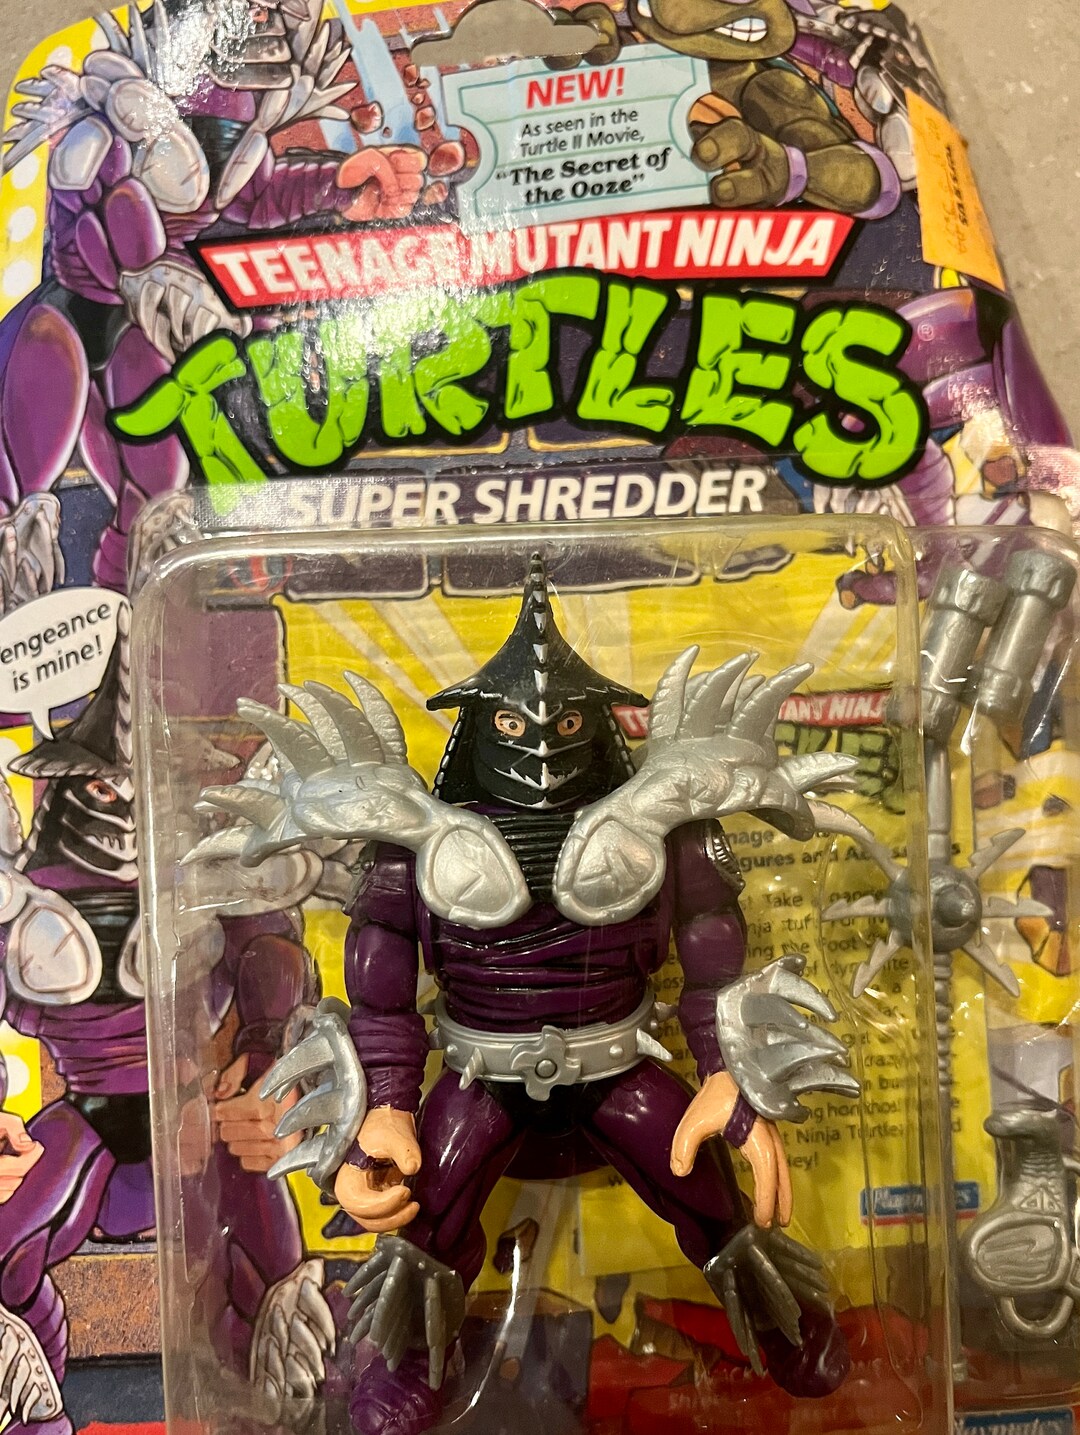 Teenage Mutant Ninja Turtles Super Shredder Action Figure